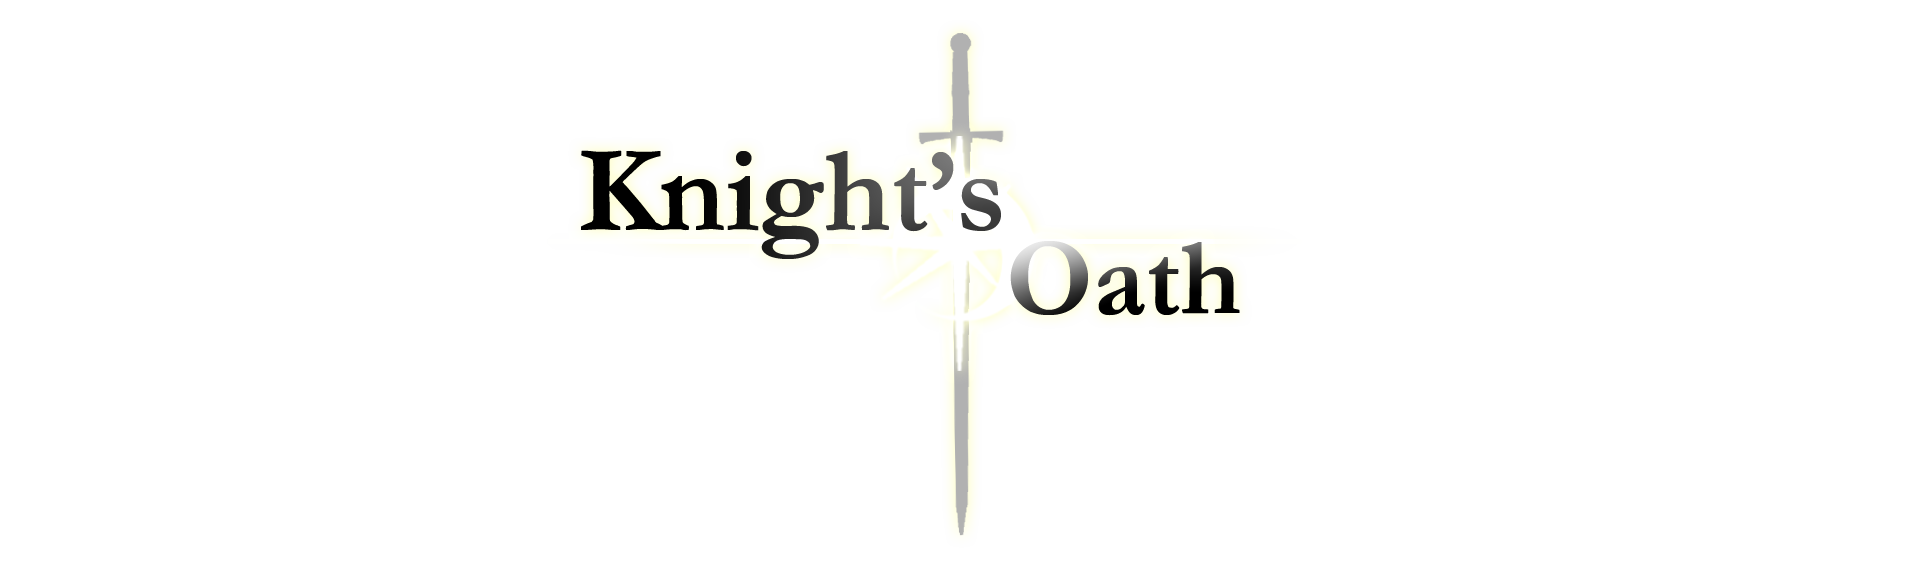 Knight's Oath